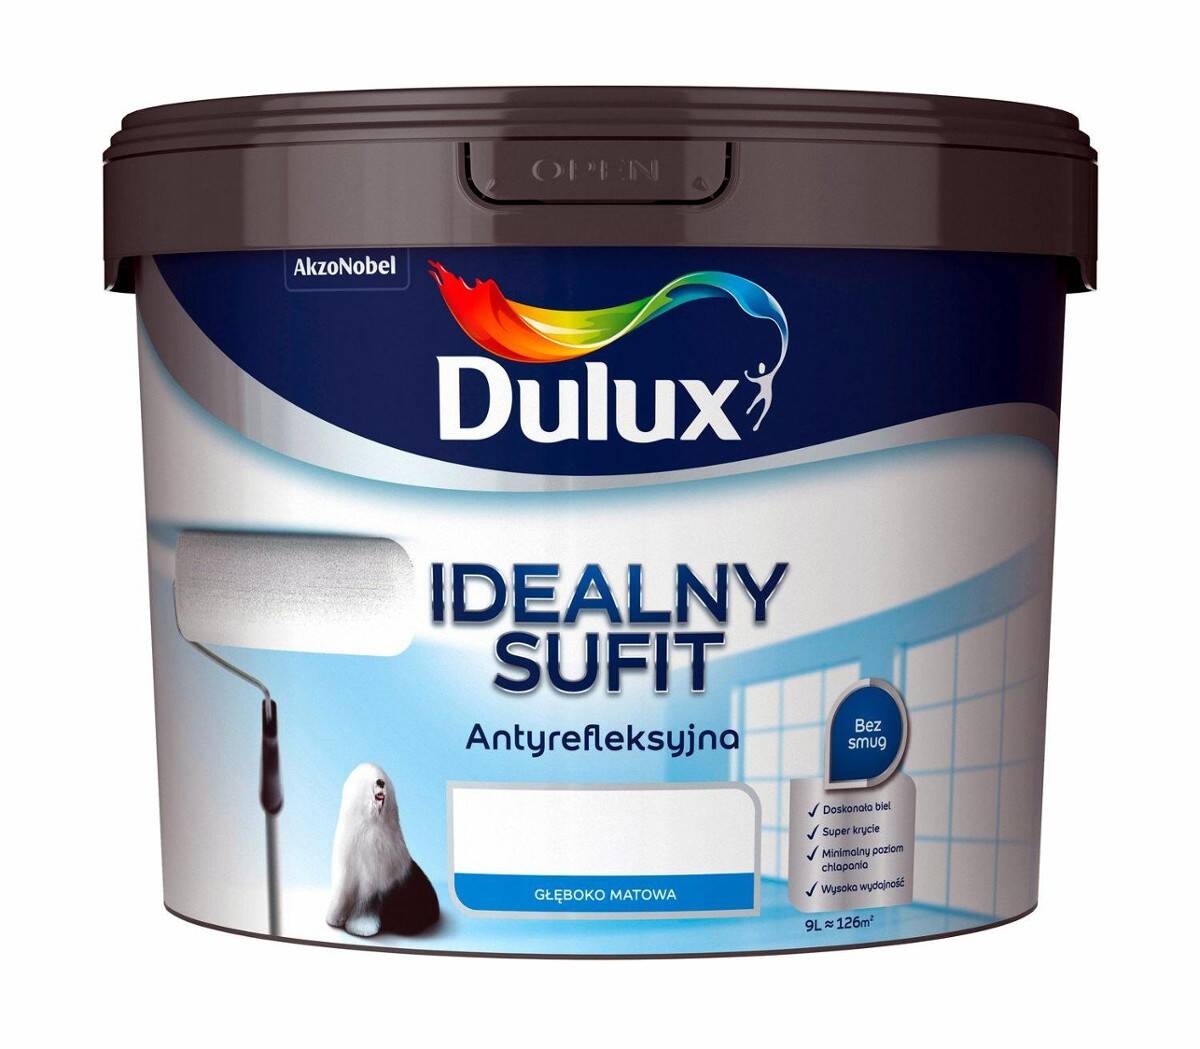 Dulux IDEALNY SUFIT farba biała anytyrefleksyjna głęboko matowa 9l.